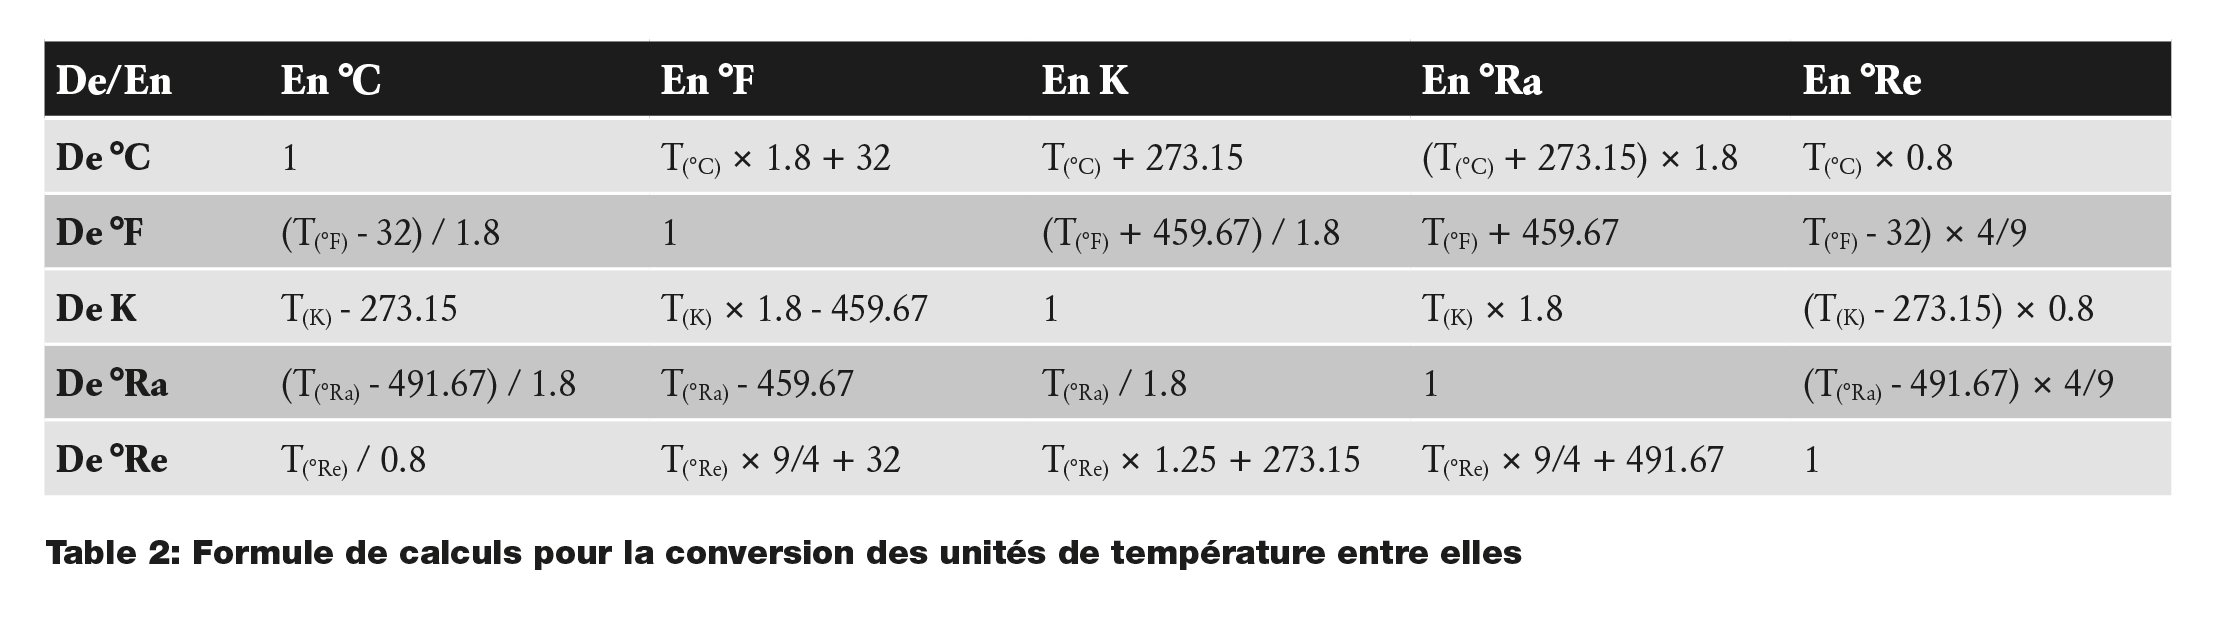 Les unités de température et leur conversion